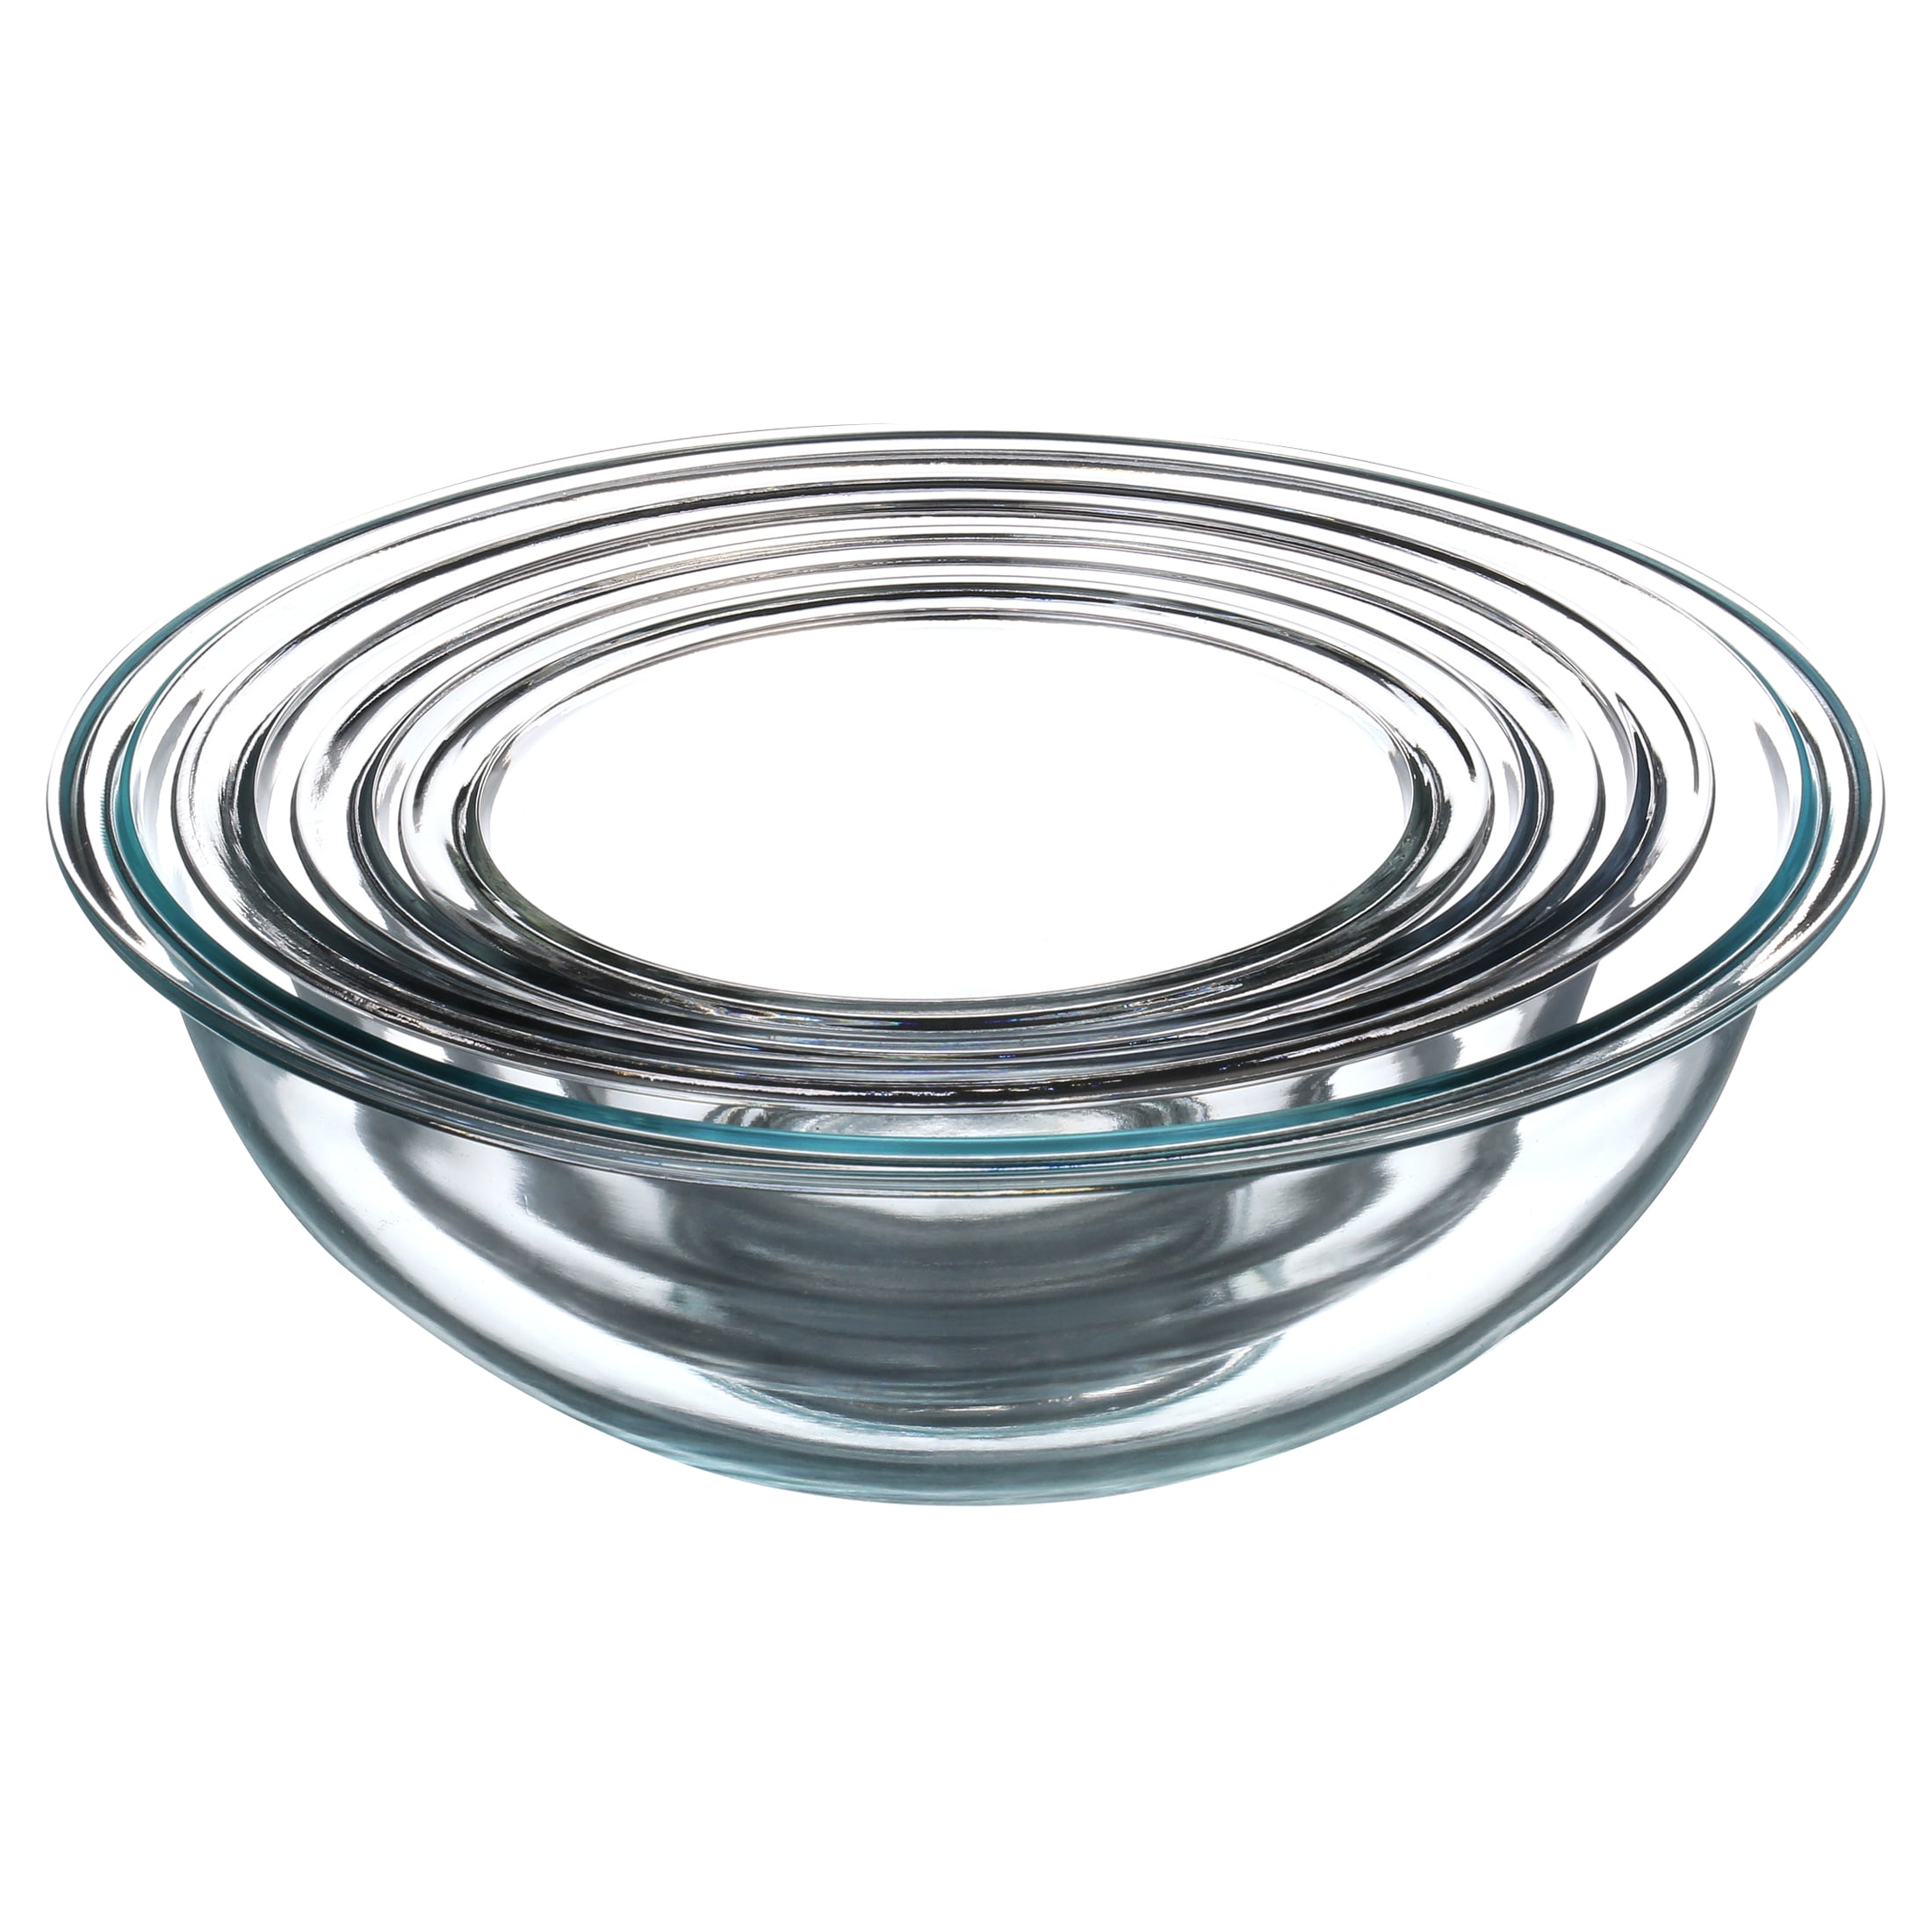 Pyrex Smart Essentials Covered Glass Pyrex Bowl Set (6-Piece) - Baller  Hardware